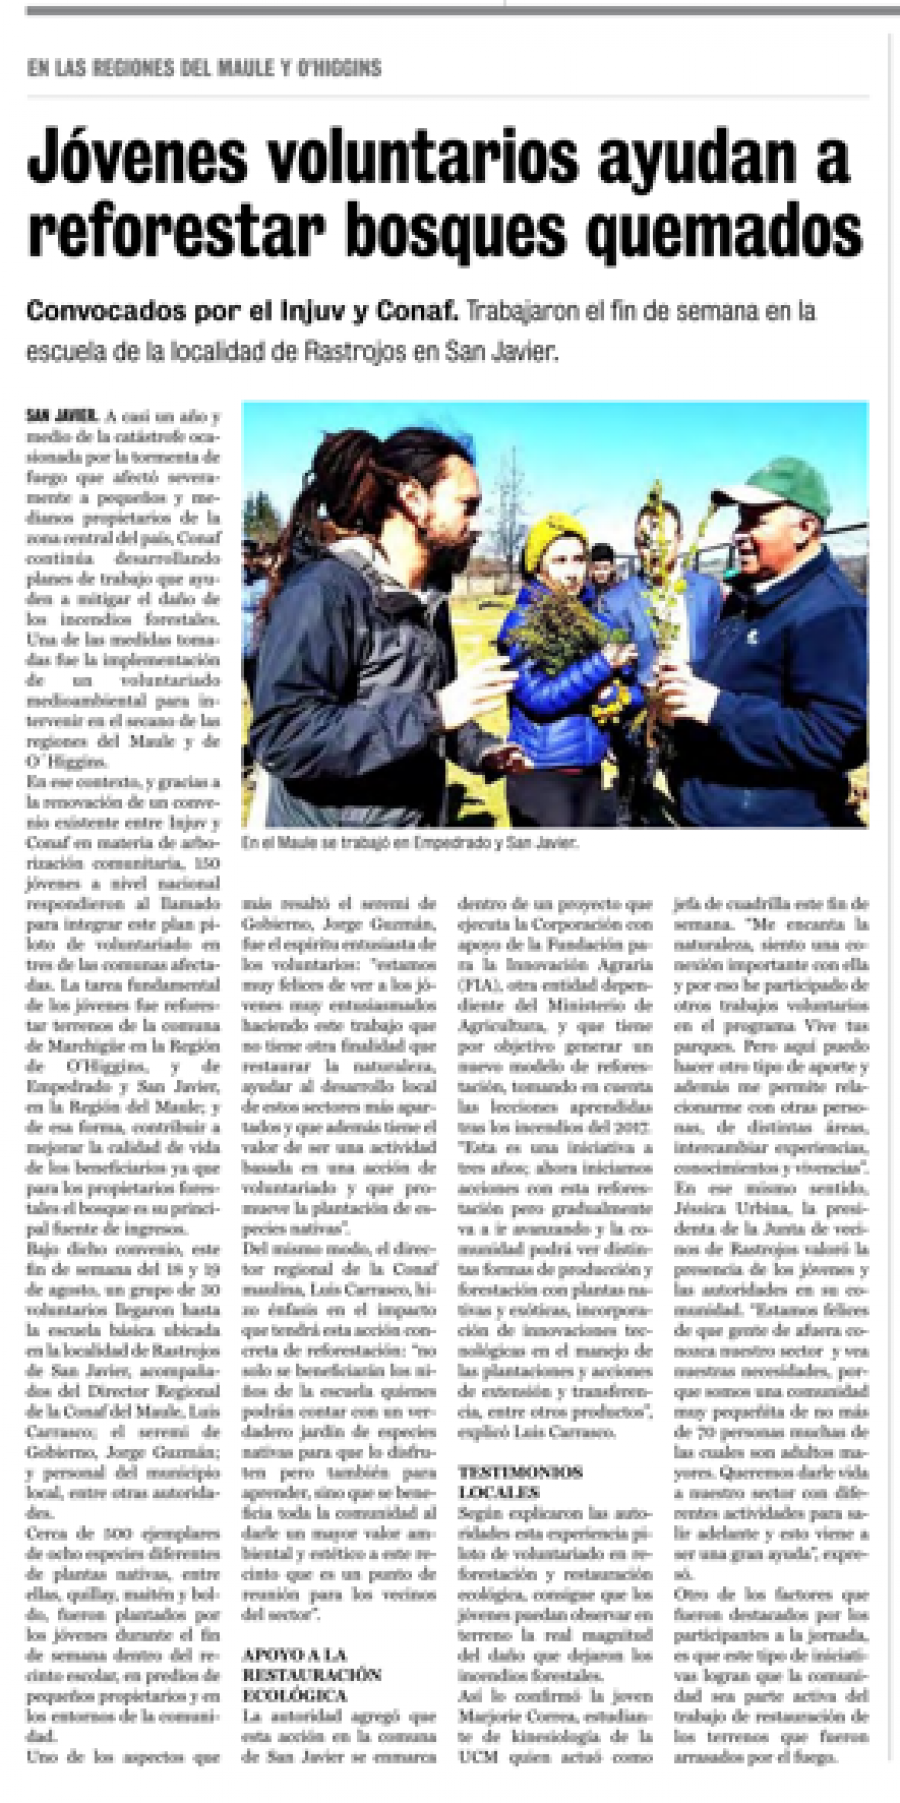 22 de agosto en Diario La Prensa: “Jóvenes voluntarios ayudan a reforestar bosques quemados”